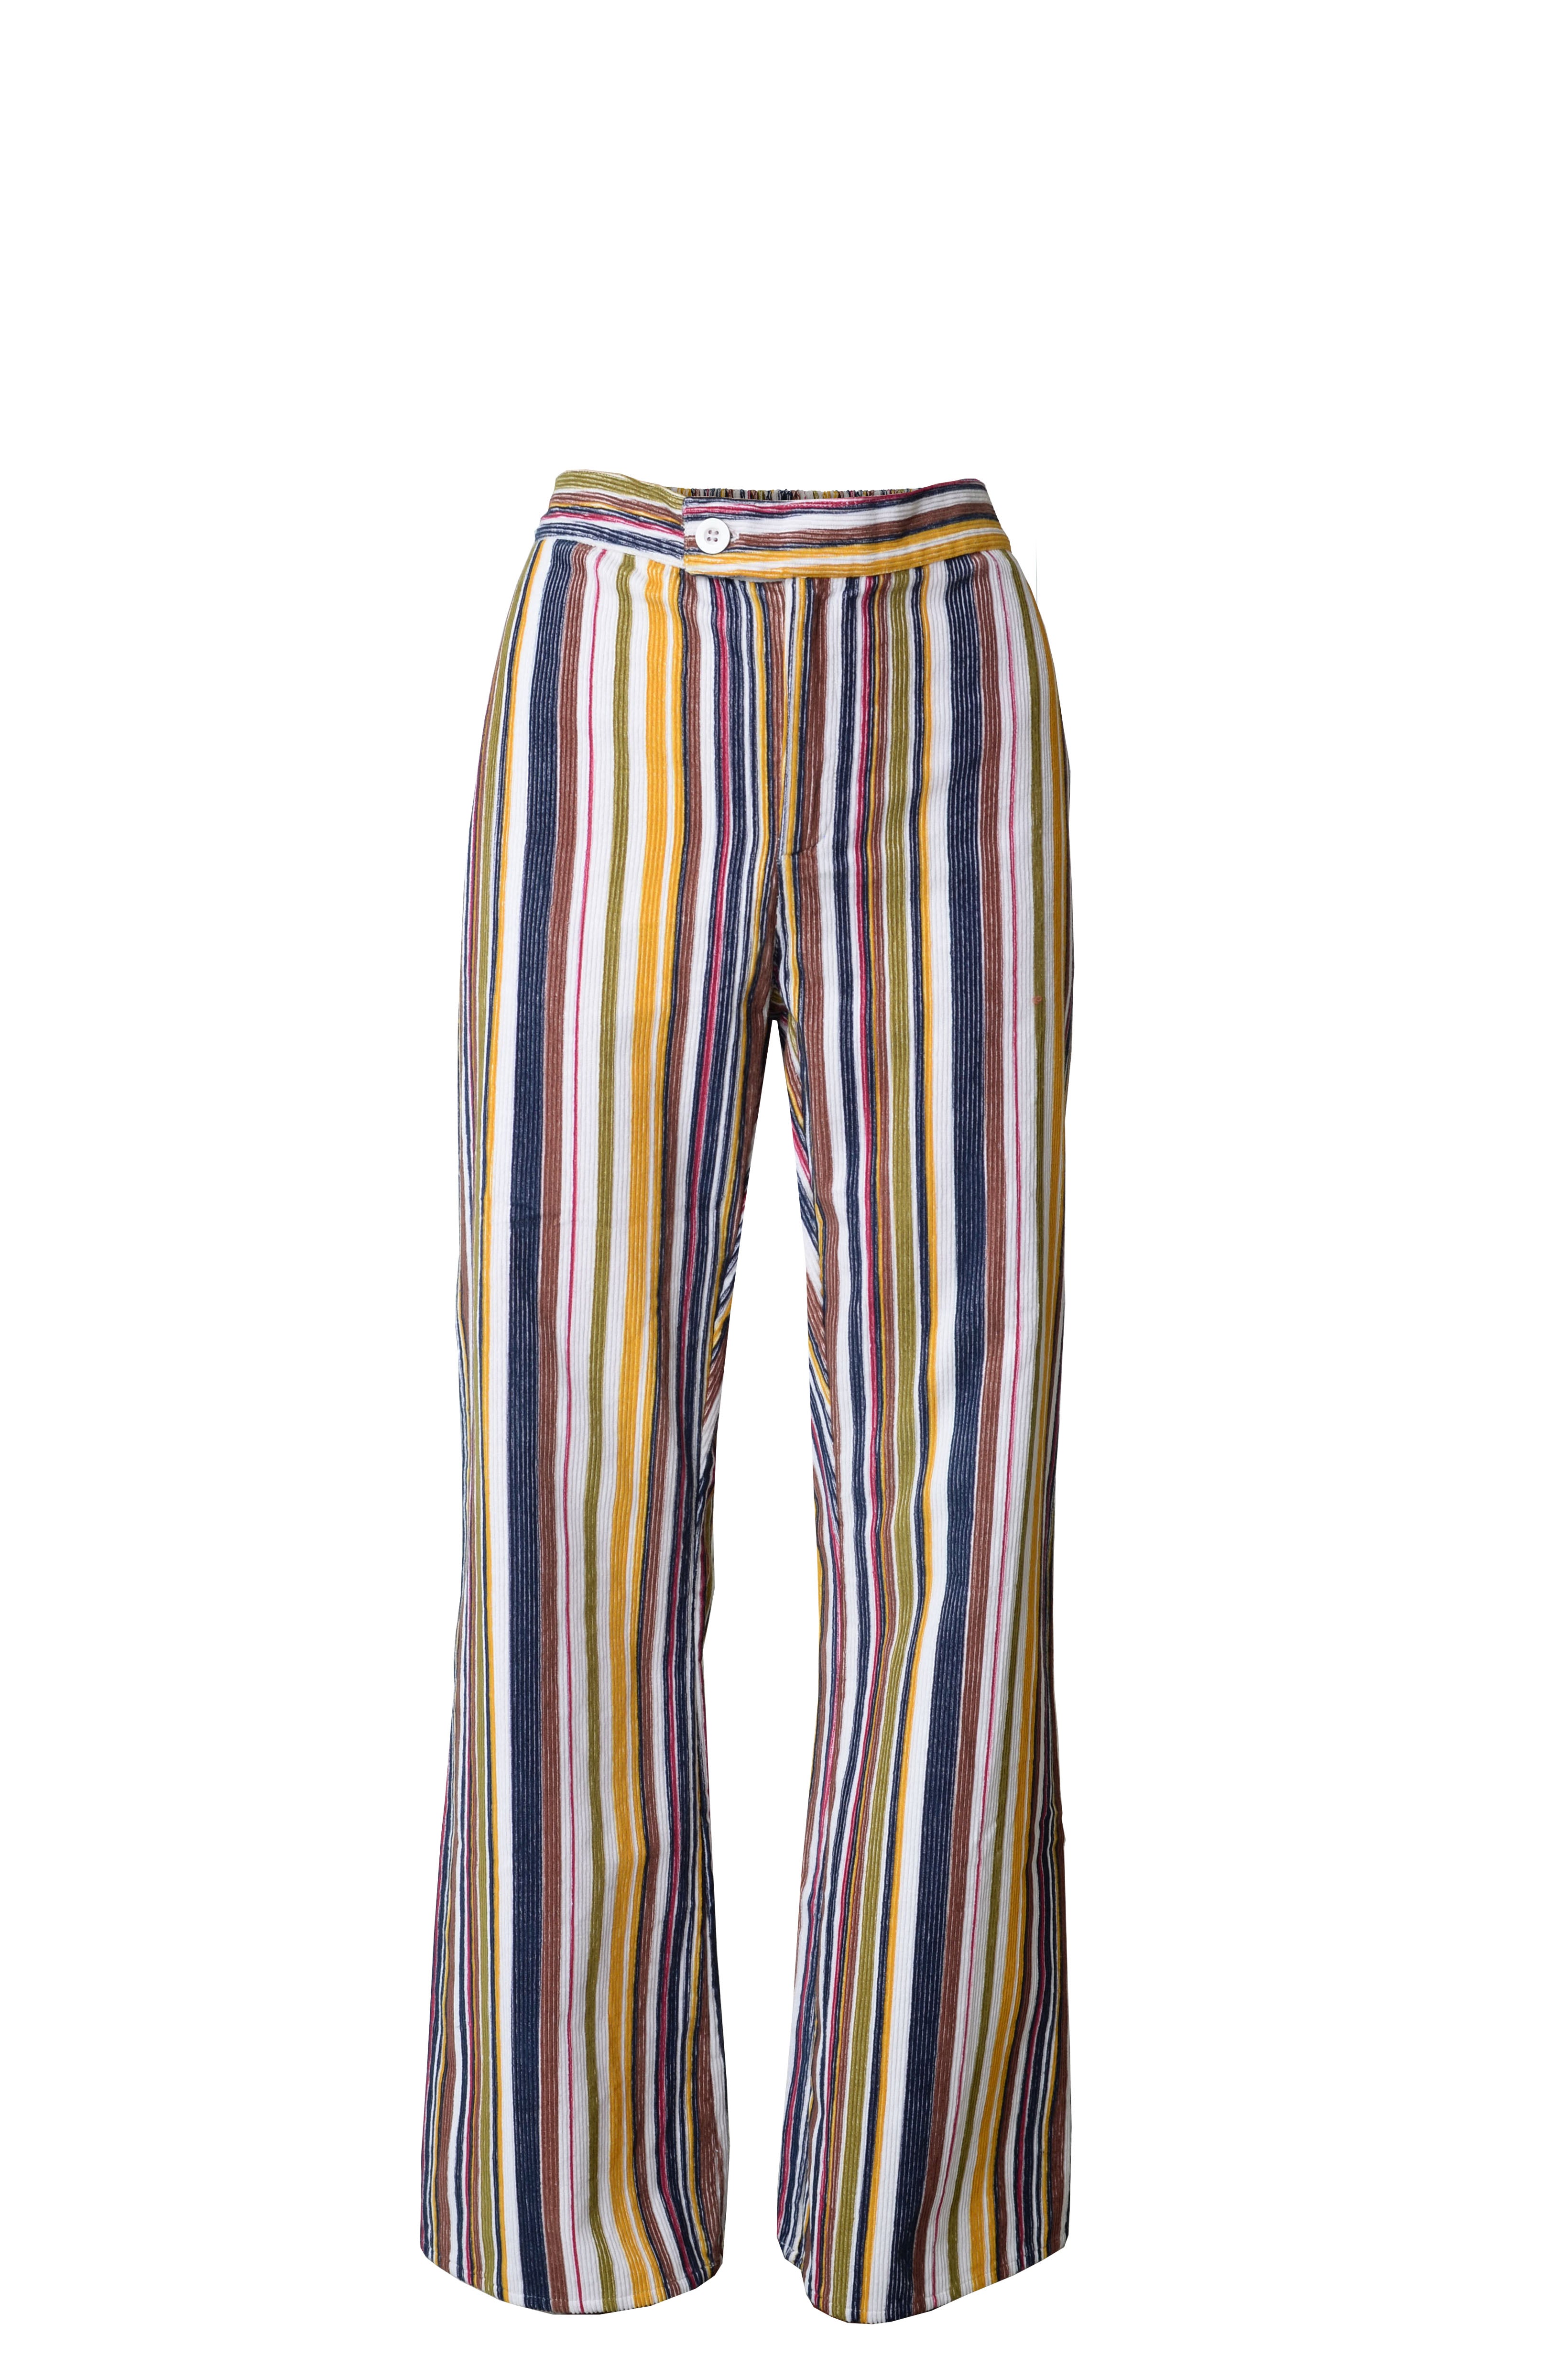 Corduroy striped pants